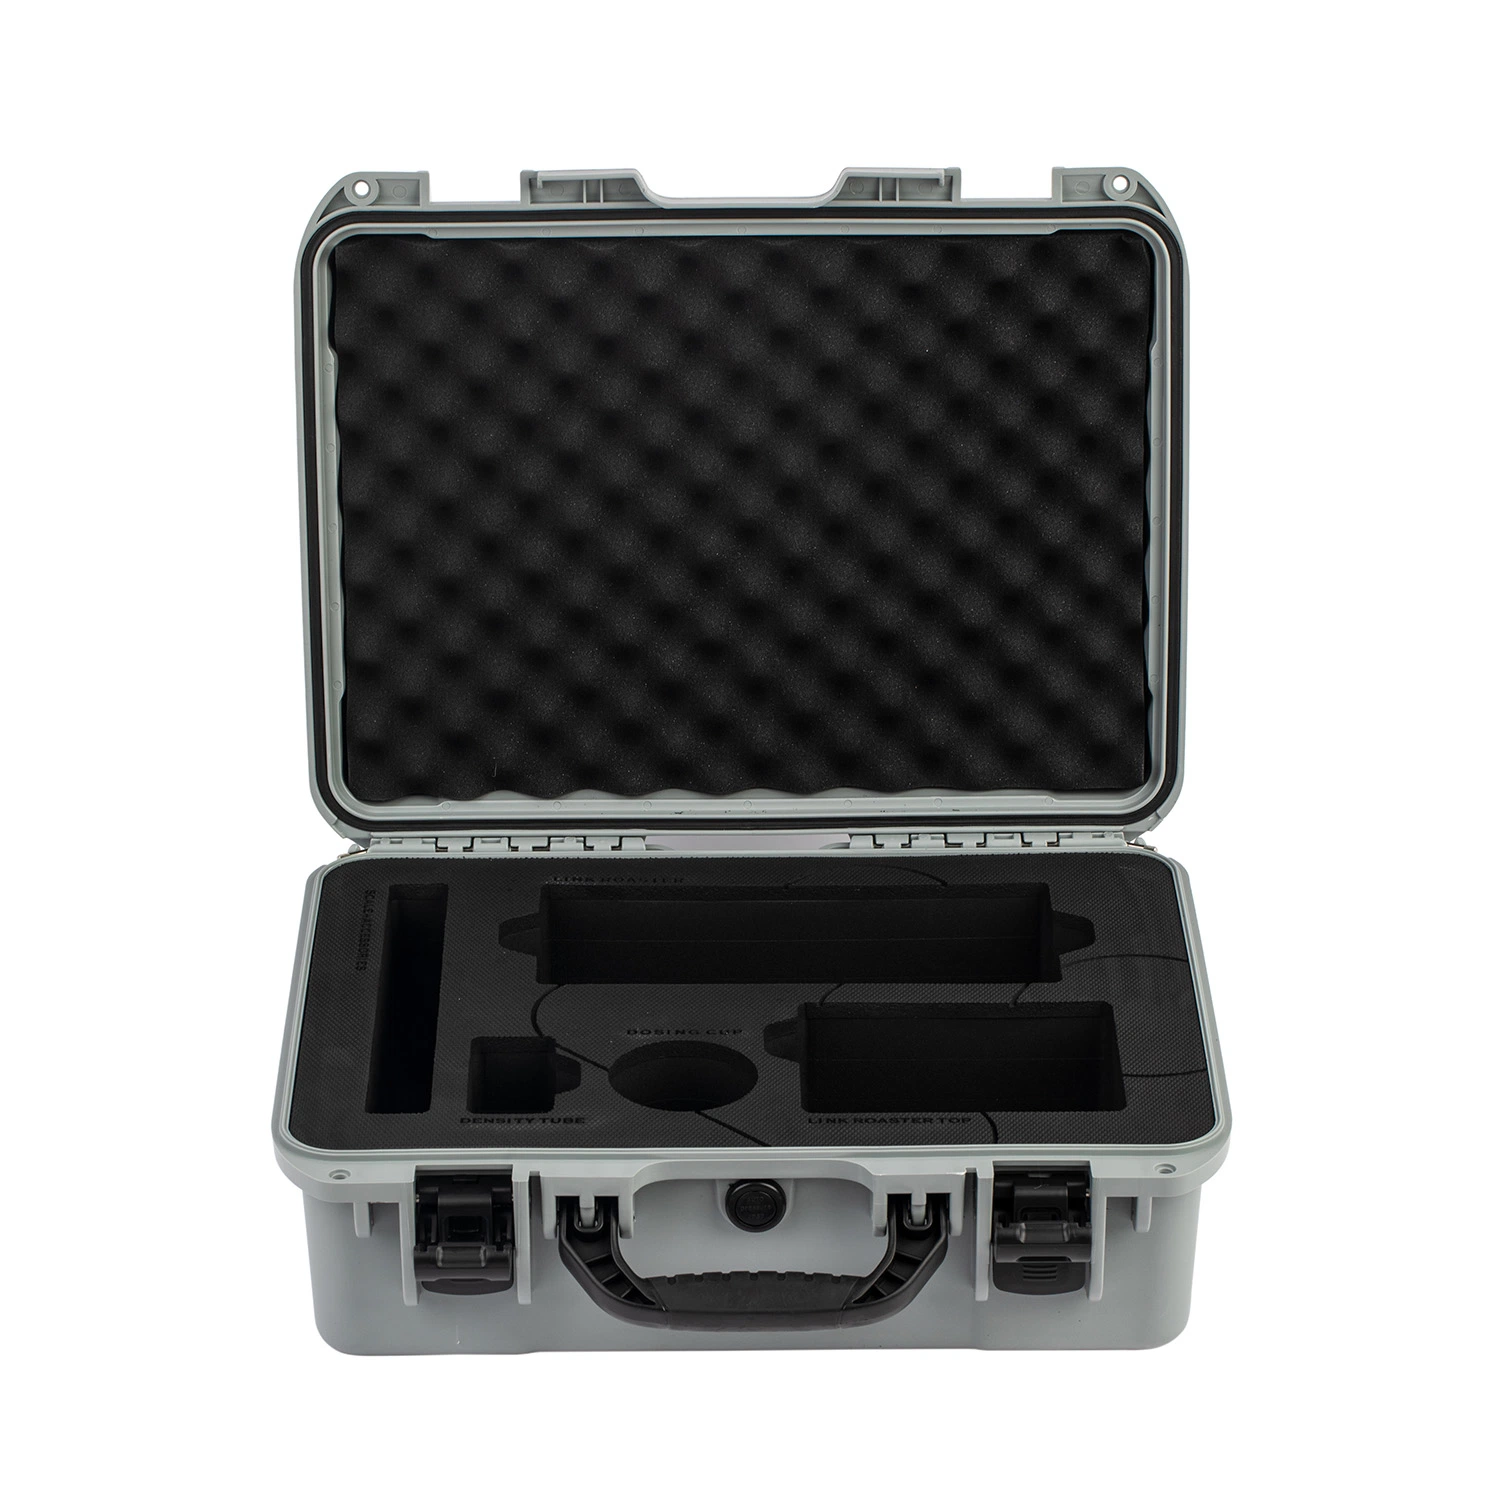 Modell 3400 Grau Farbe PP Kunststoff Werkzeug Instrument Equipment Case